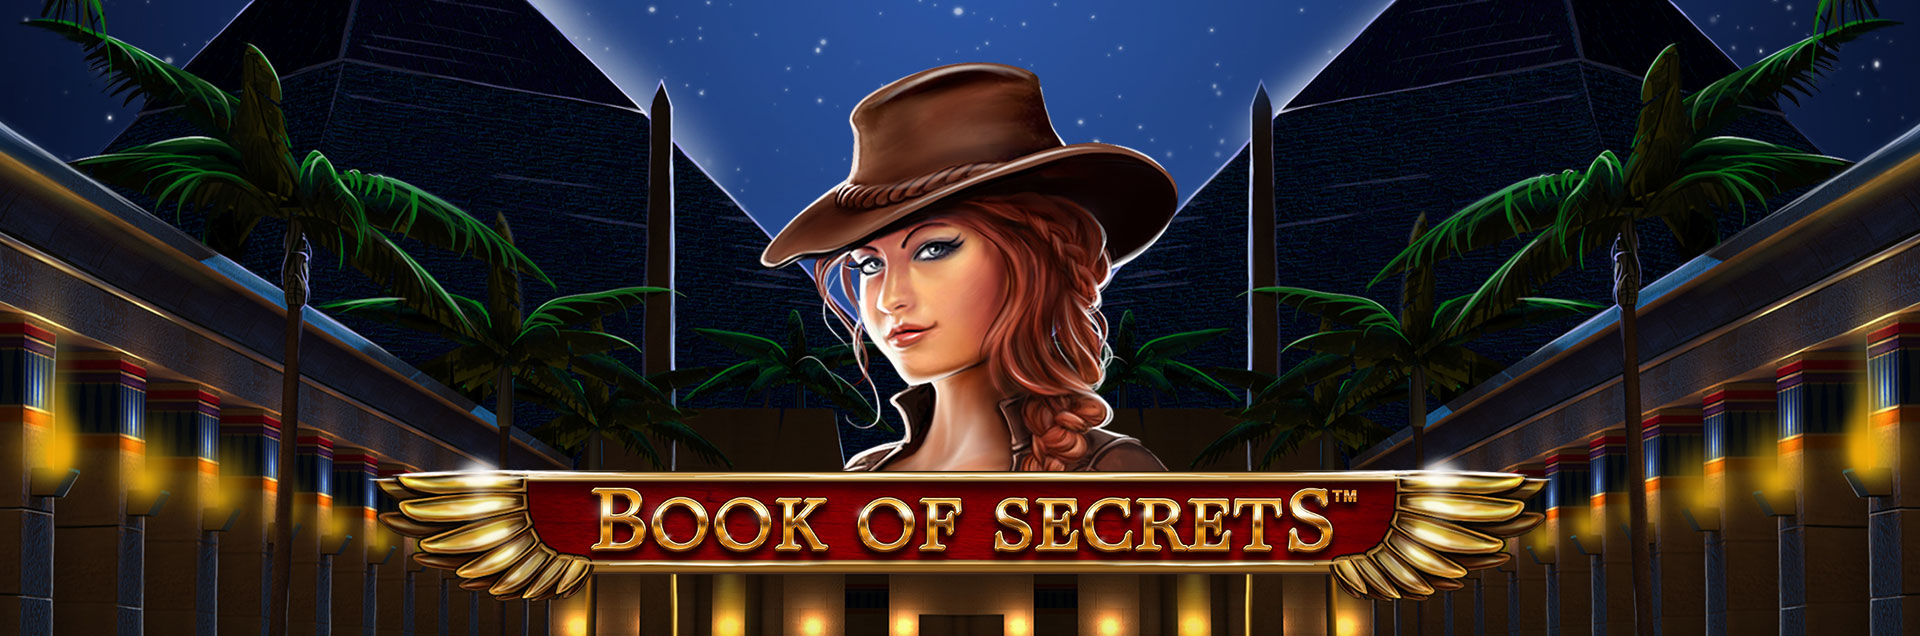 Book of Secrets header games final